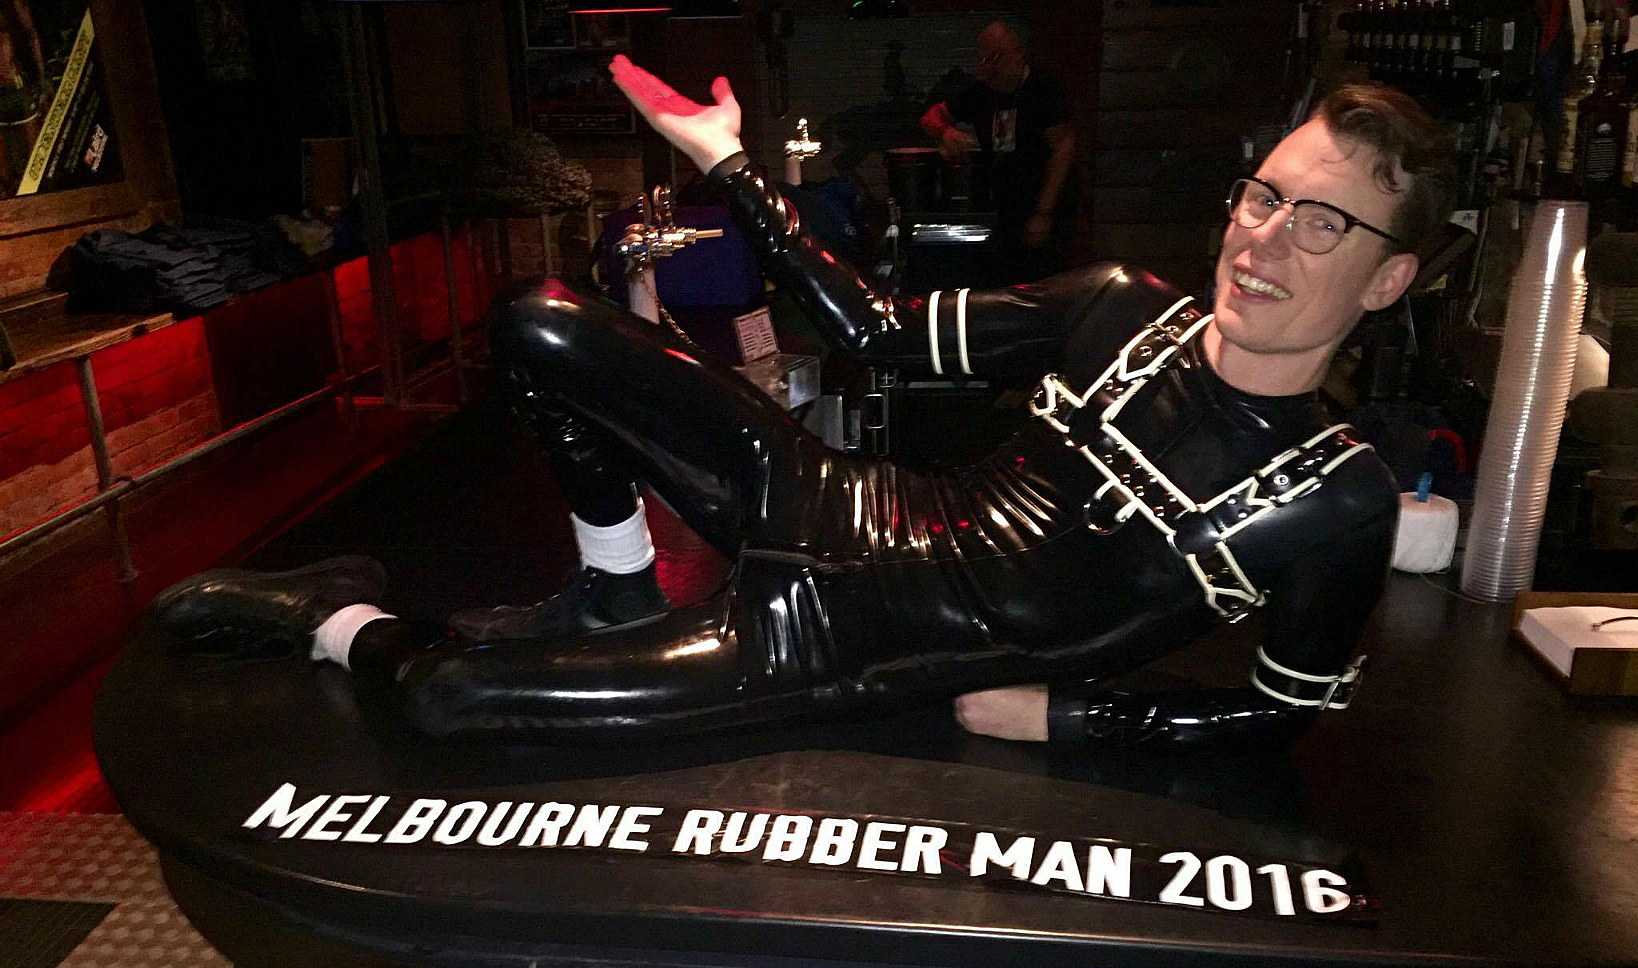 Meet Melbourne’s first Rubber Man